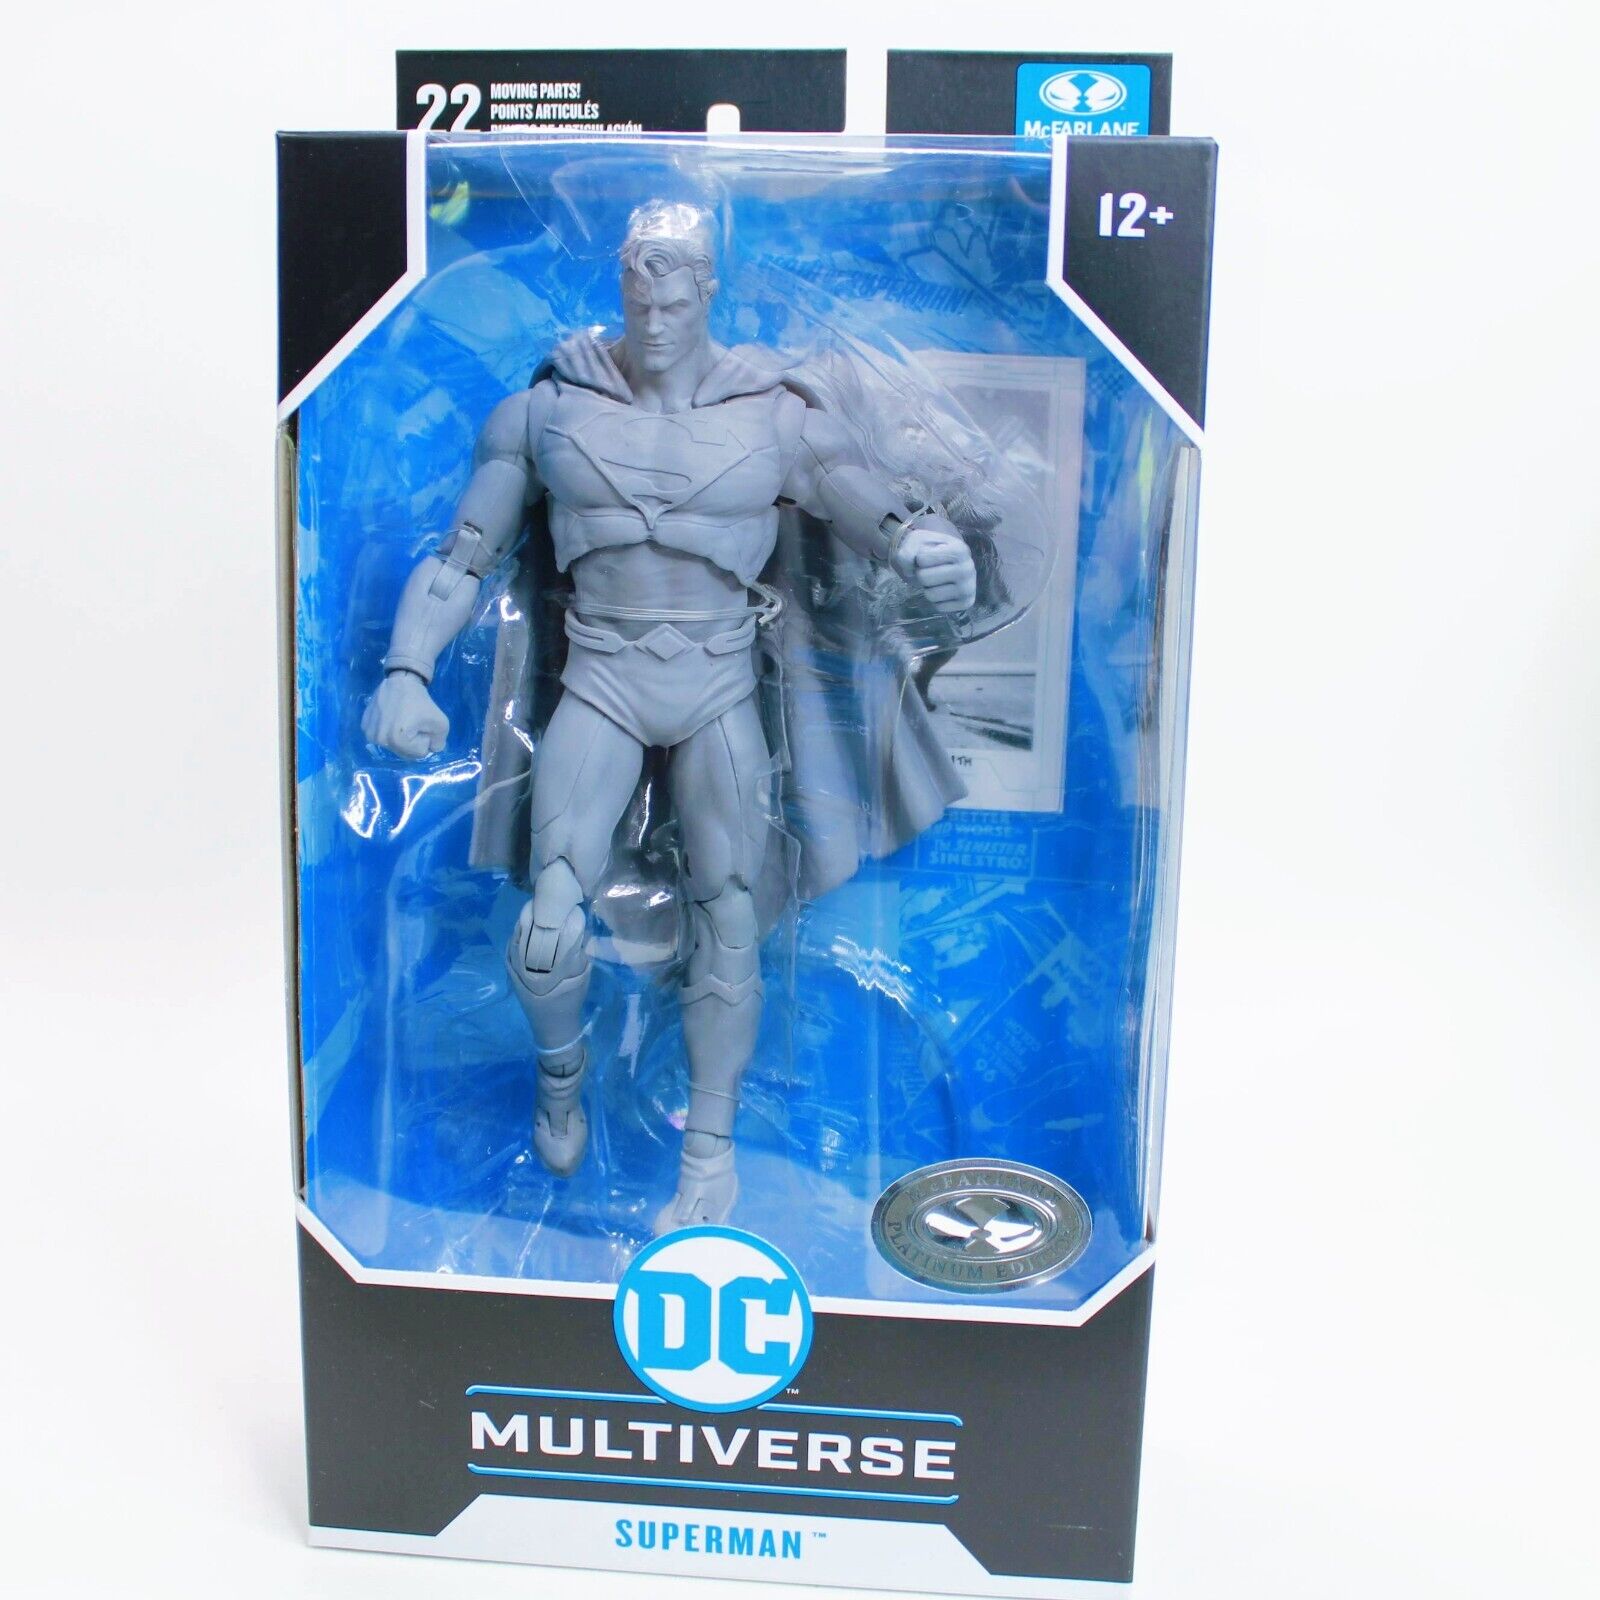 Mcfarlane toys - dc multiverse - superman dc rebirth